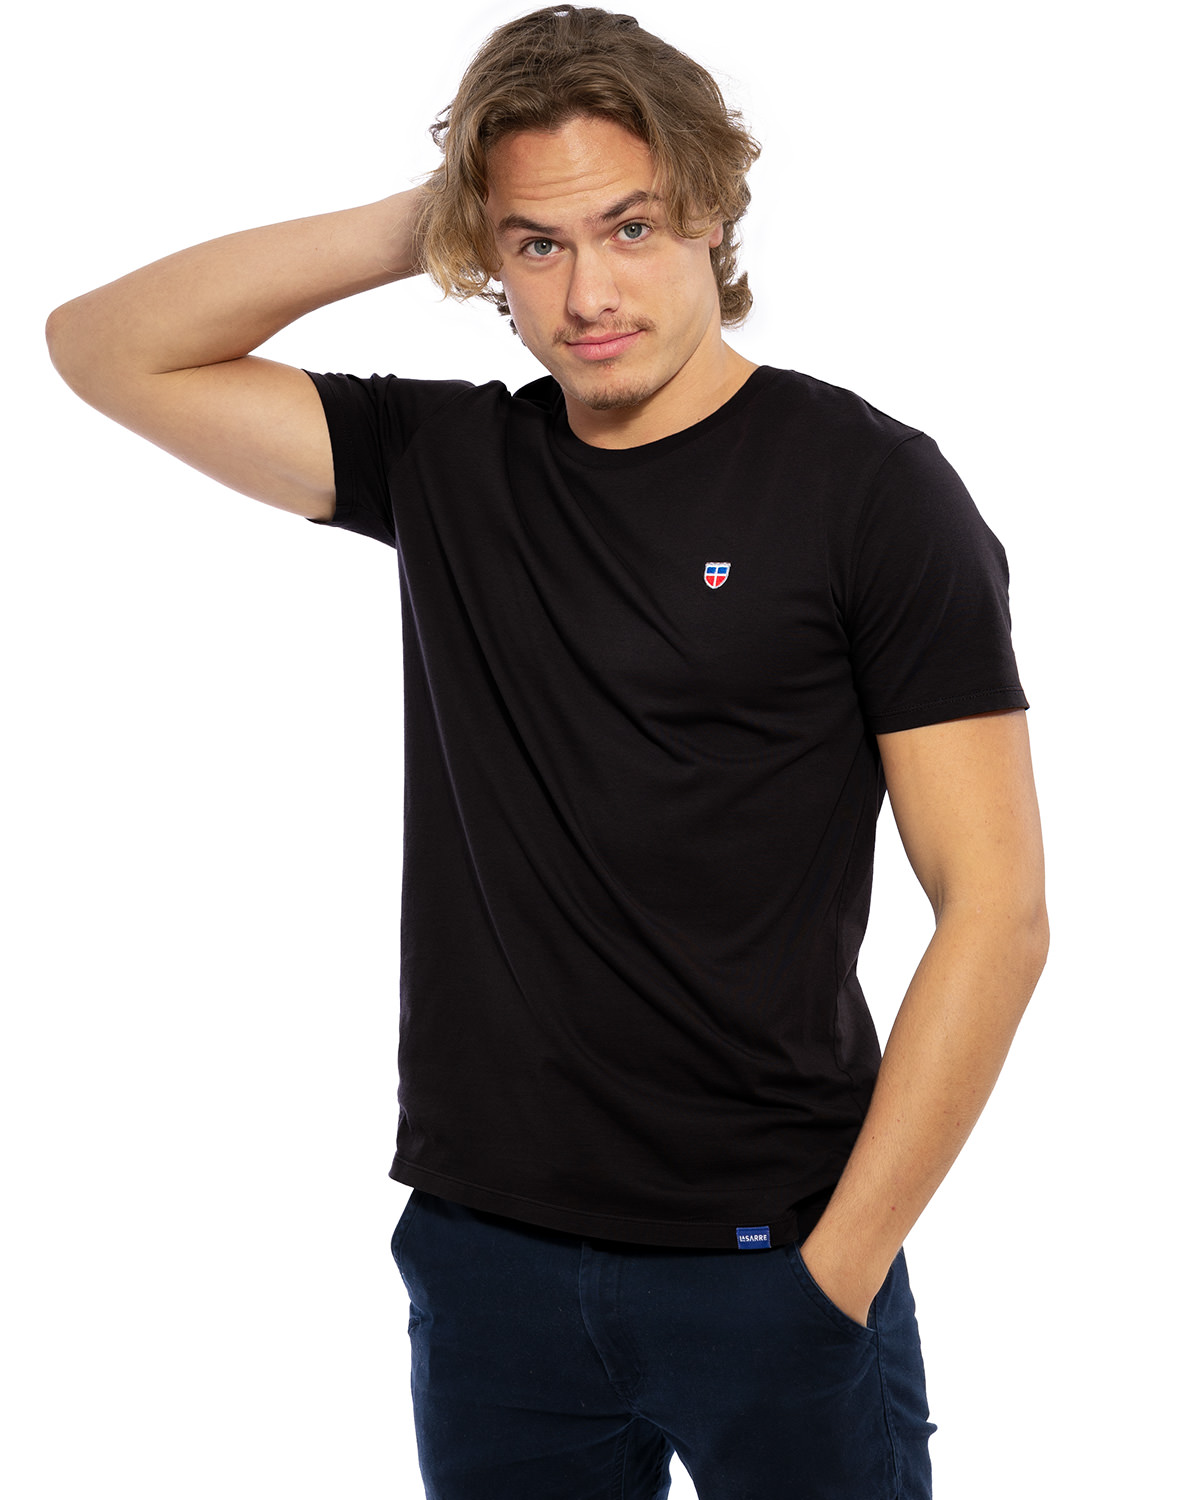 Hochwertig besticktes Männer T-Shirt „PAUL“ in der Farbe Schwarz von der Saarland Marke Lasarre mit dem LASARRE Wappen in Blau, Weiß, Rot auf der linken Brust und dem blauen LASARRE Markenzeichen am Saum